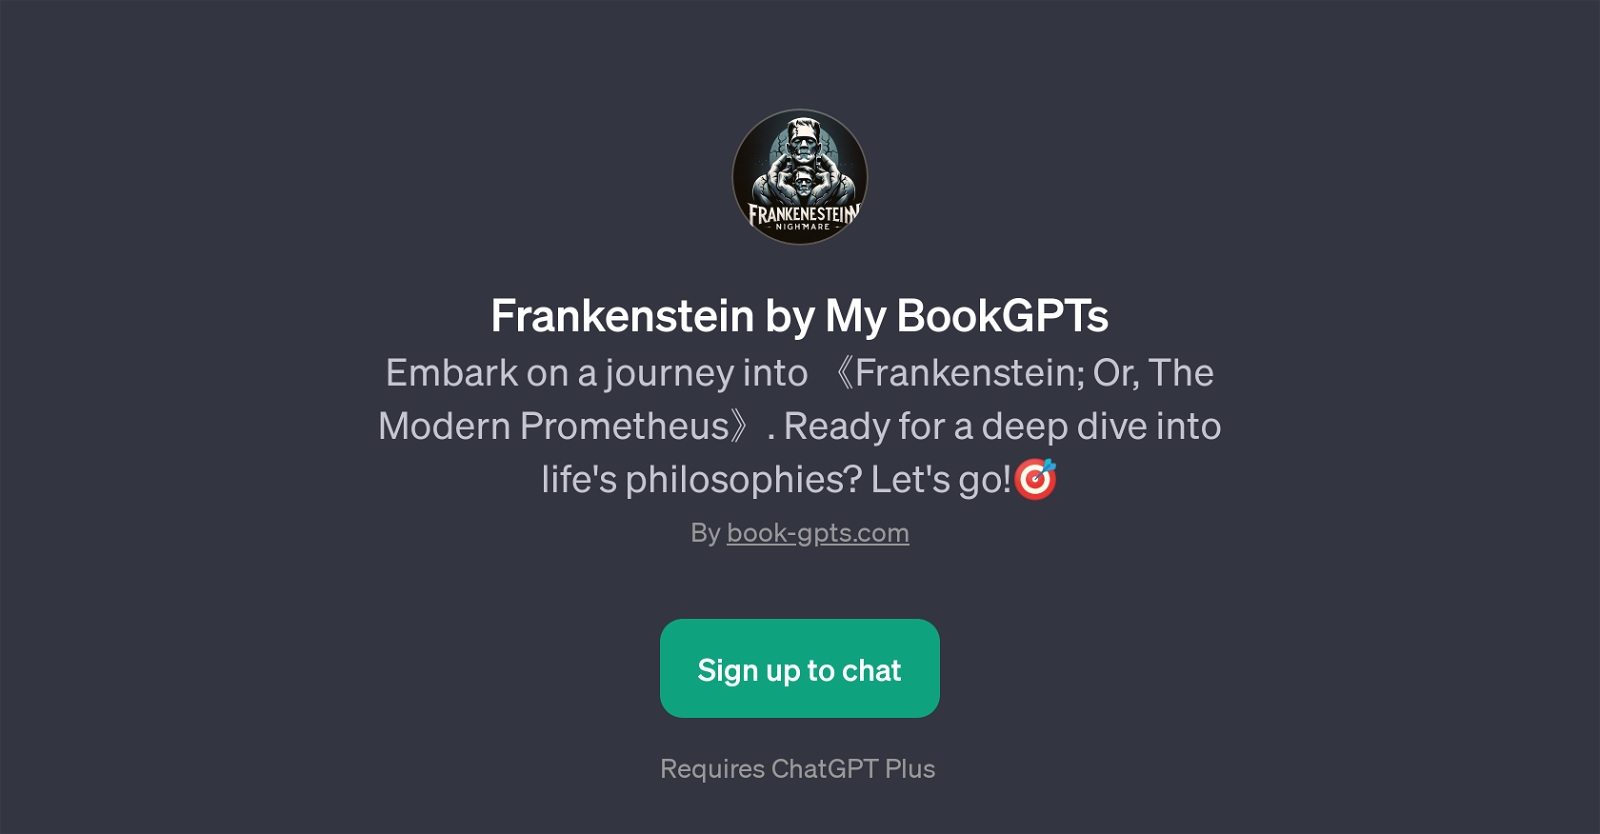 Frankenstein by My BookGPTs website